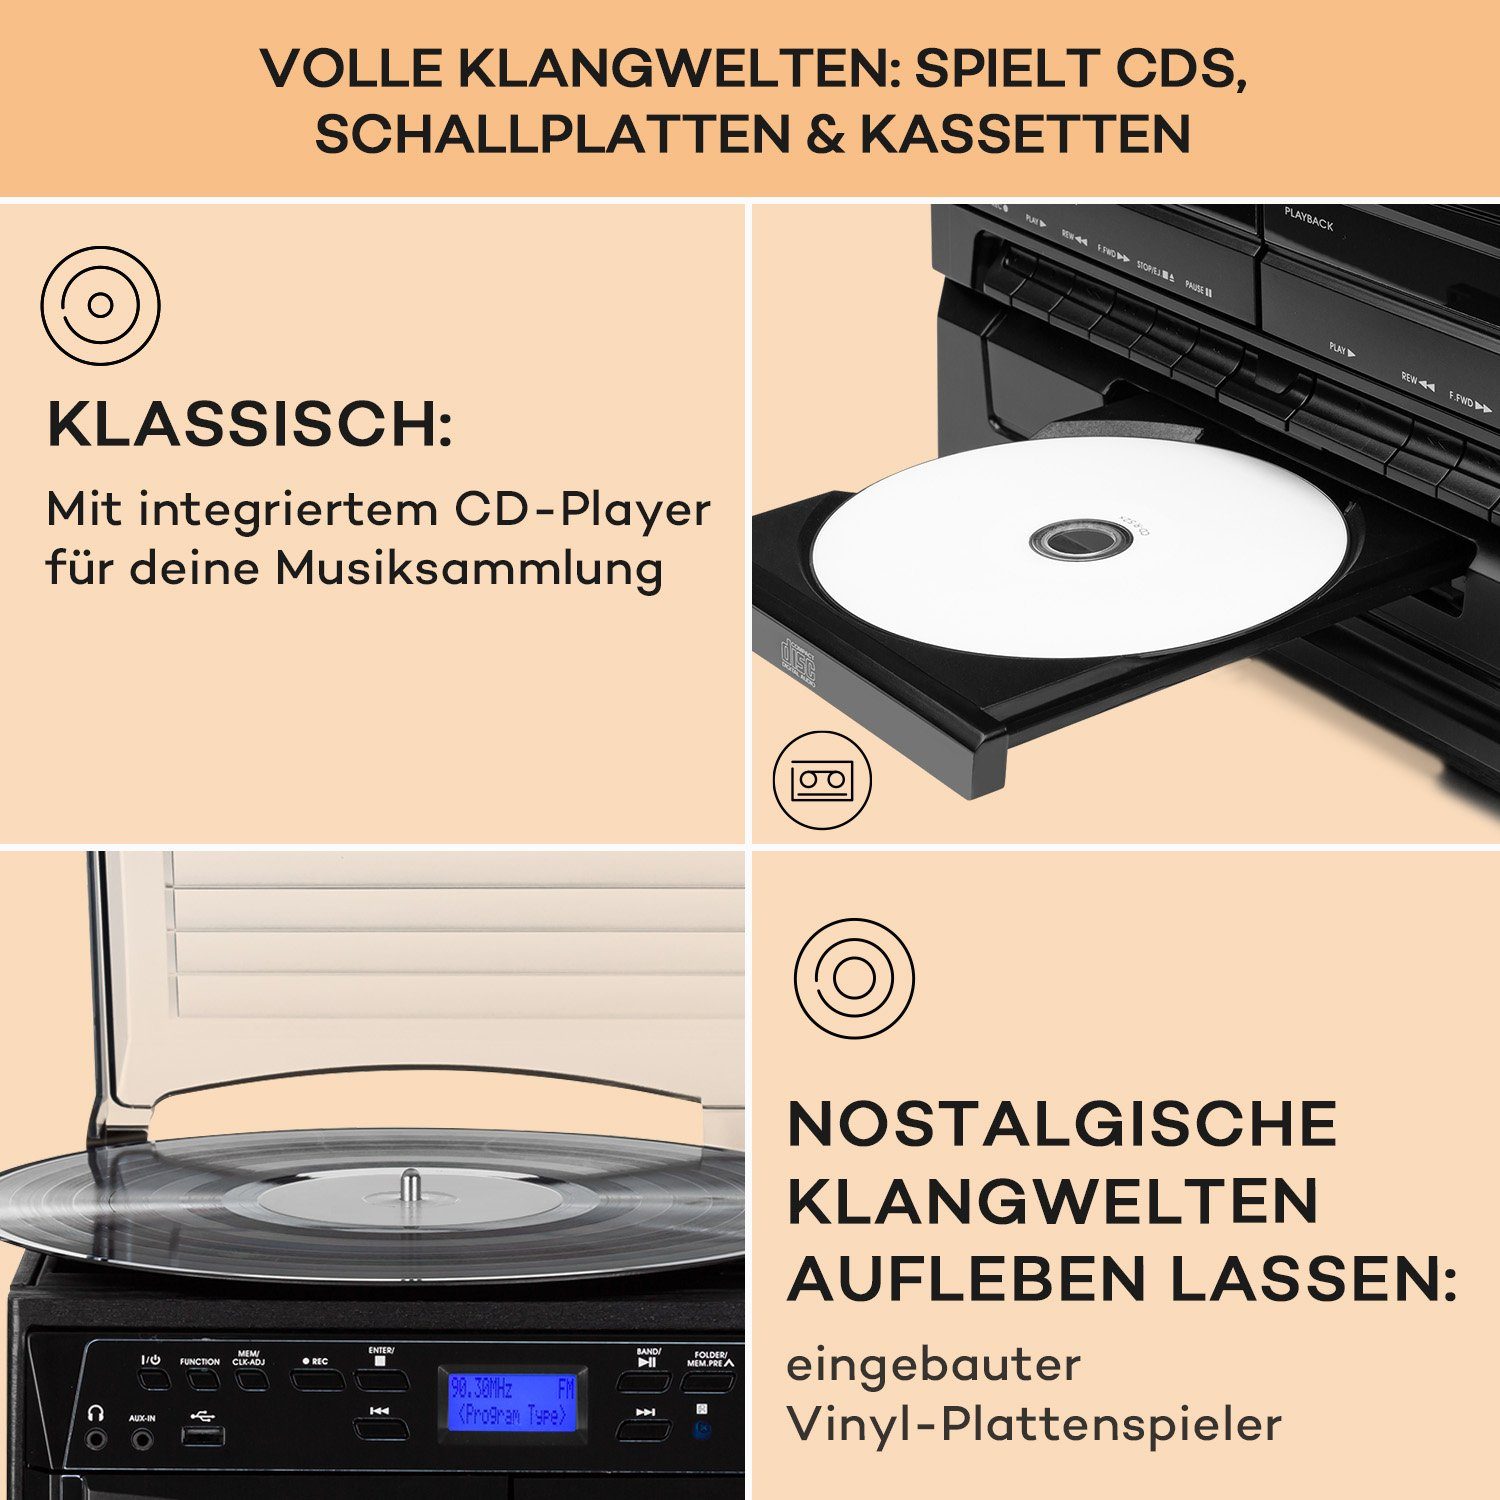 Auna 388-DAB+ Stereoanlage 10 Vinyl mit W, Kompaktanlage) Radiotuner, Stereoanlage Musikanlage Radio (FM Player DAB+ und CD